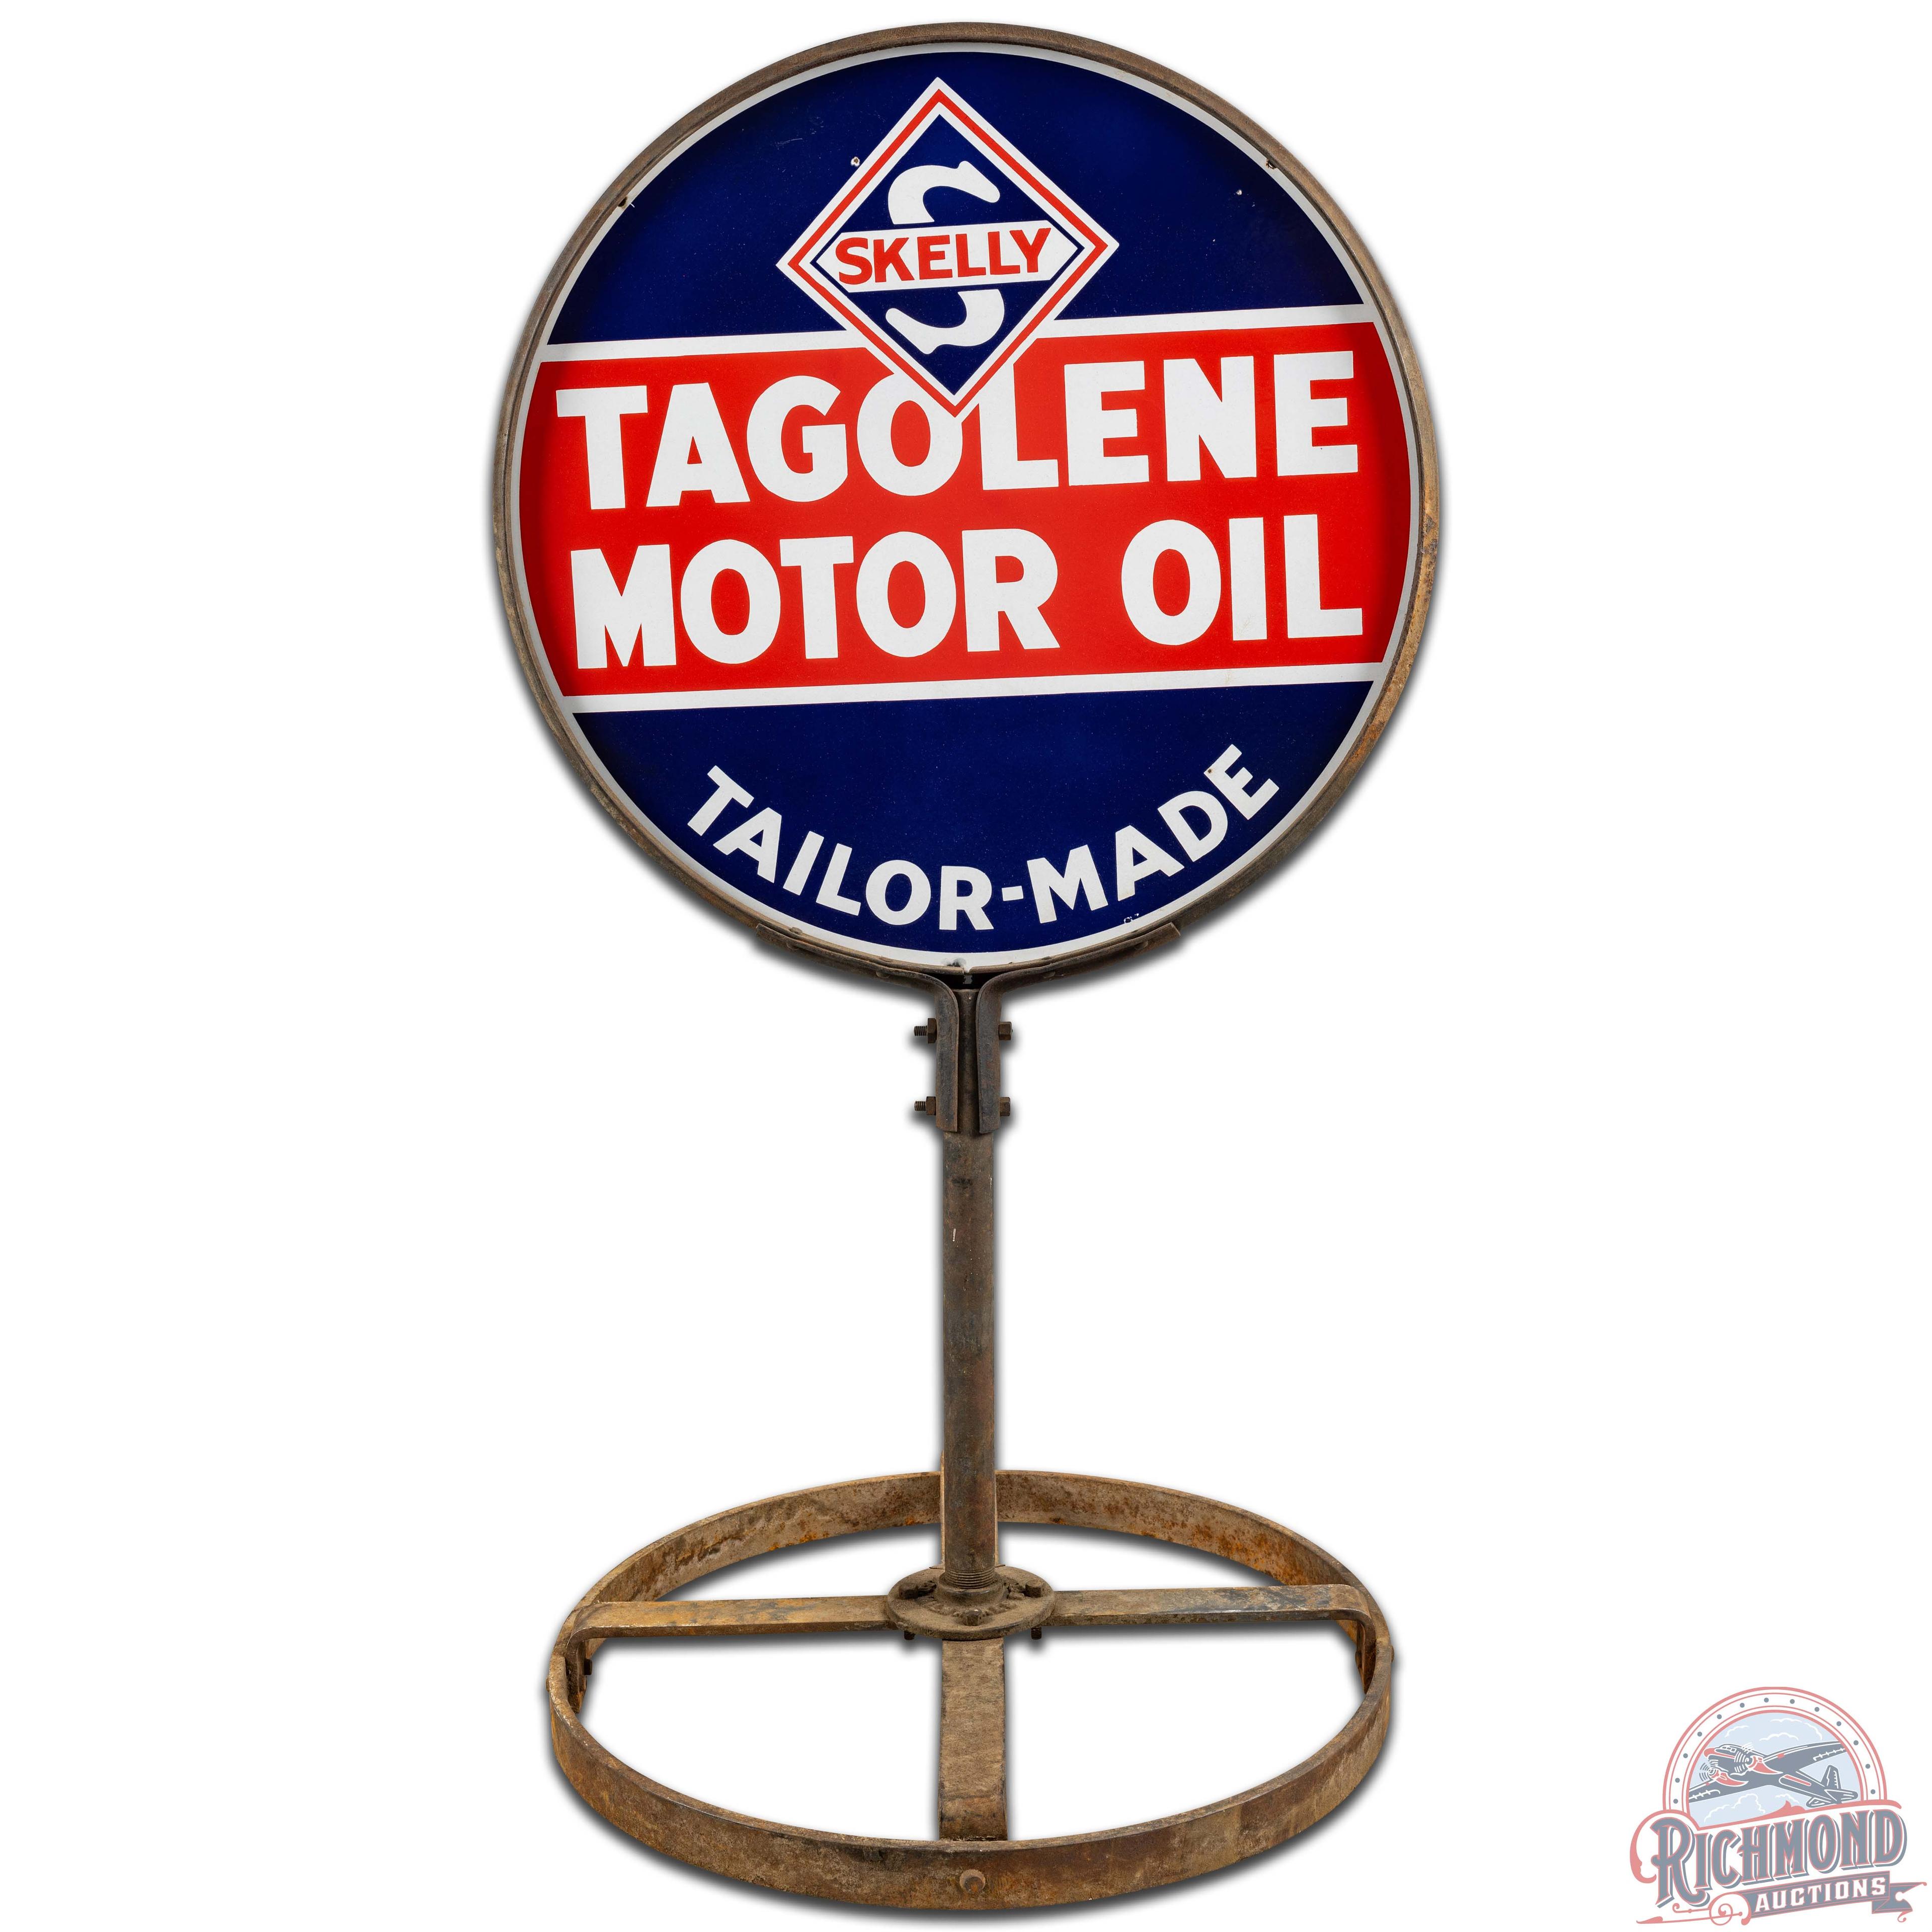 Skelly Tagolene Motor Oil 30" DS Porcelain Curb Sign